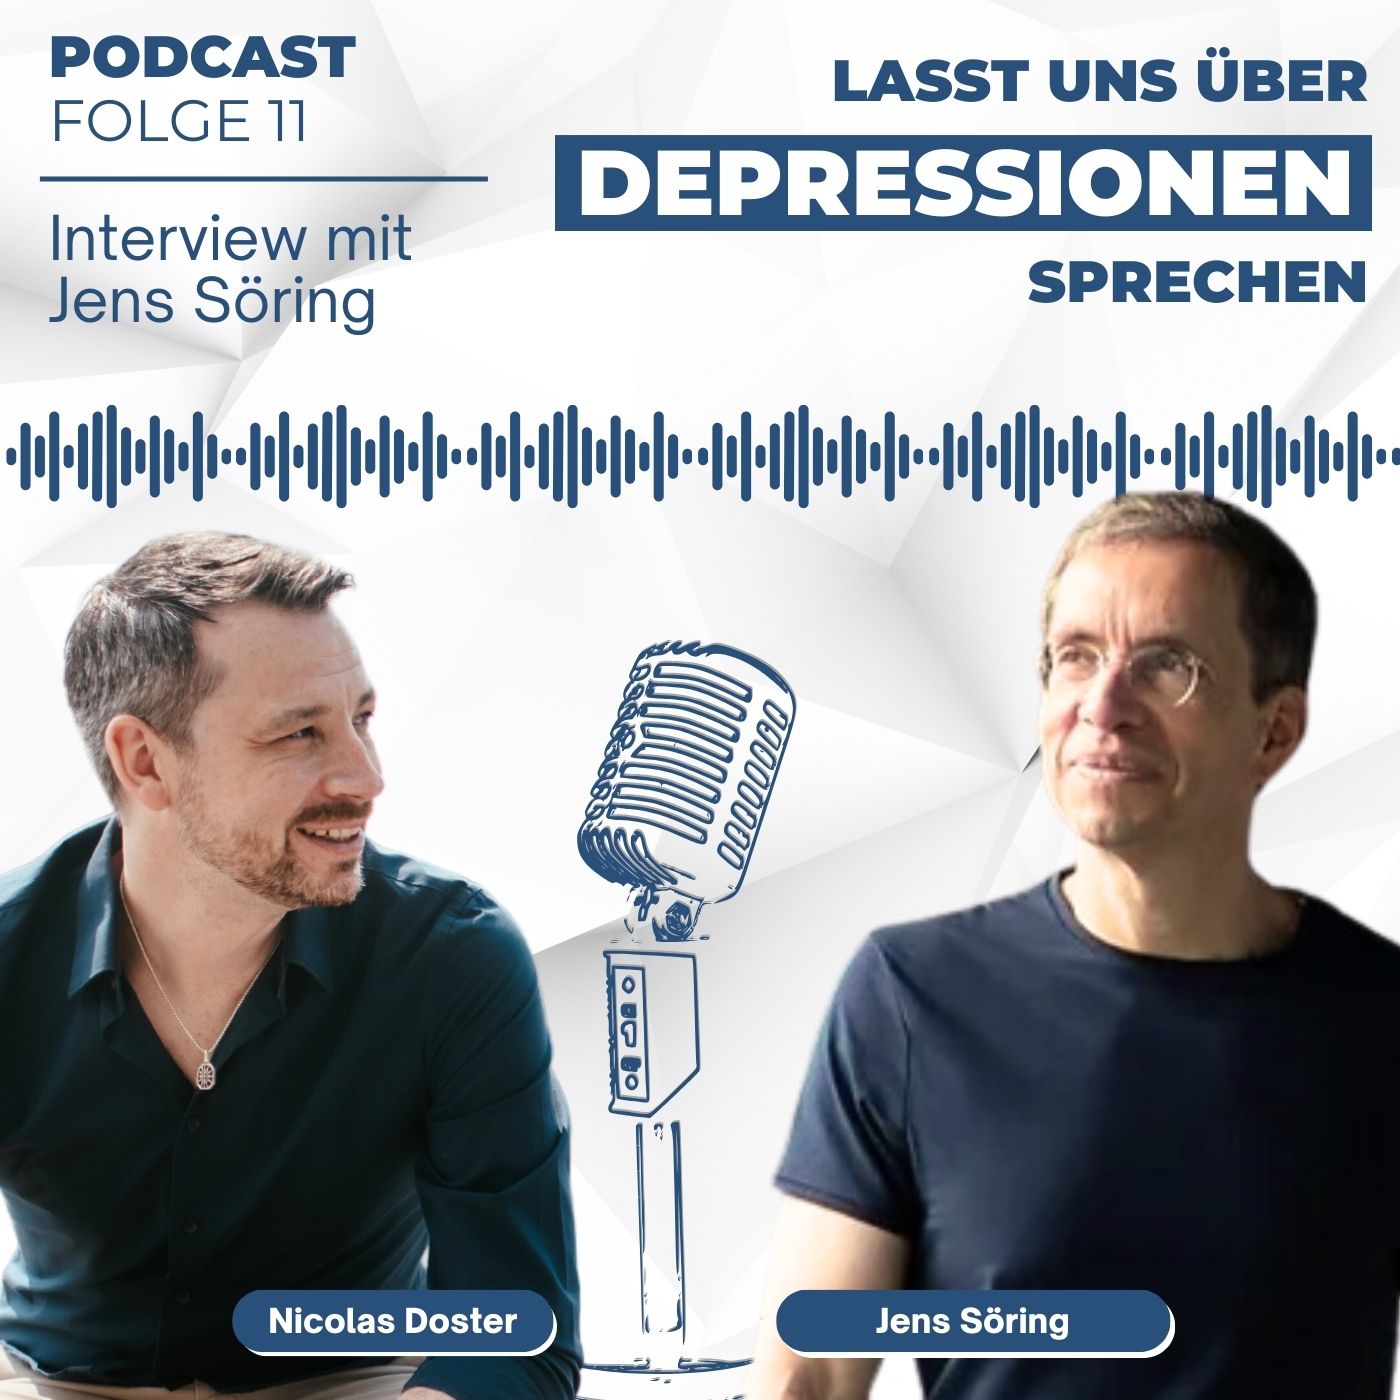 Folge 11 - Resilienz in der Depression aufbauen - Interview mit Jens Söring